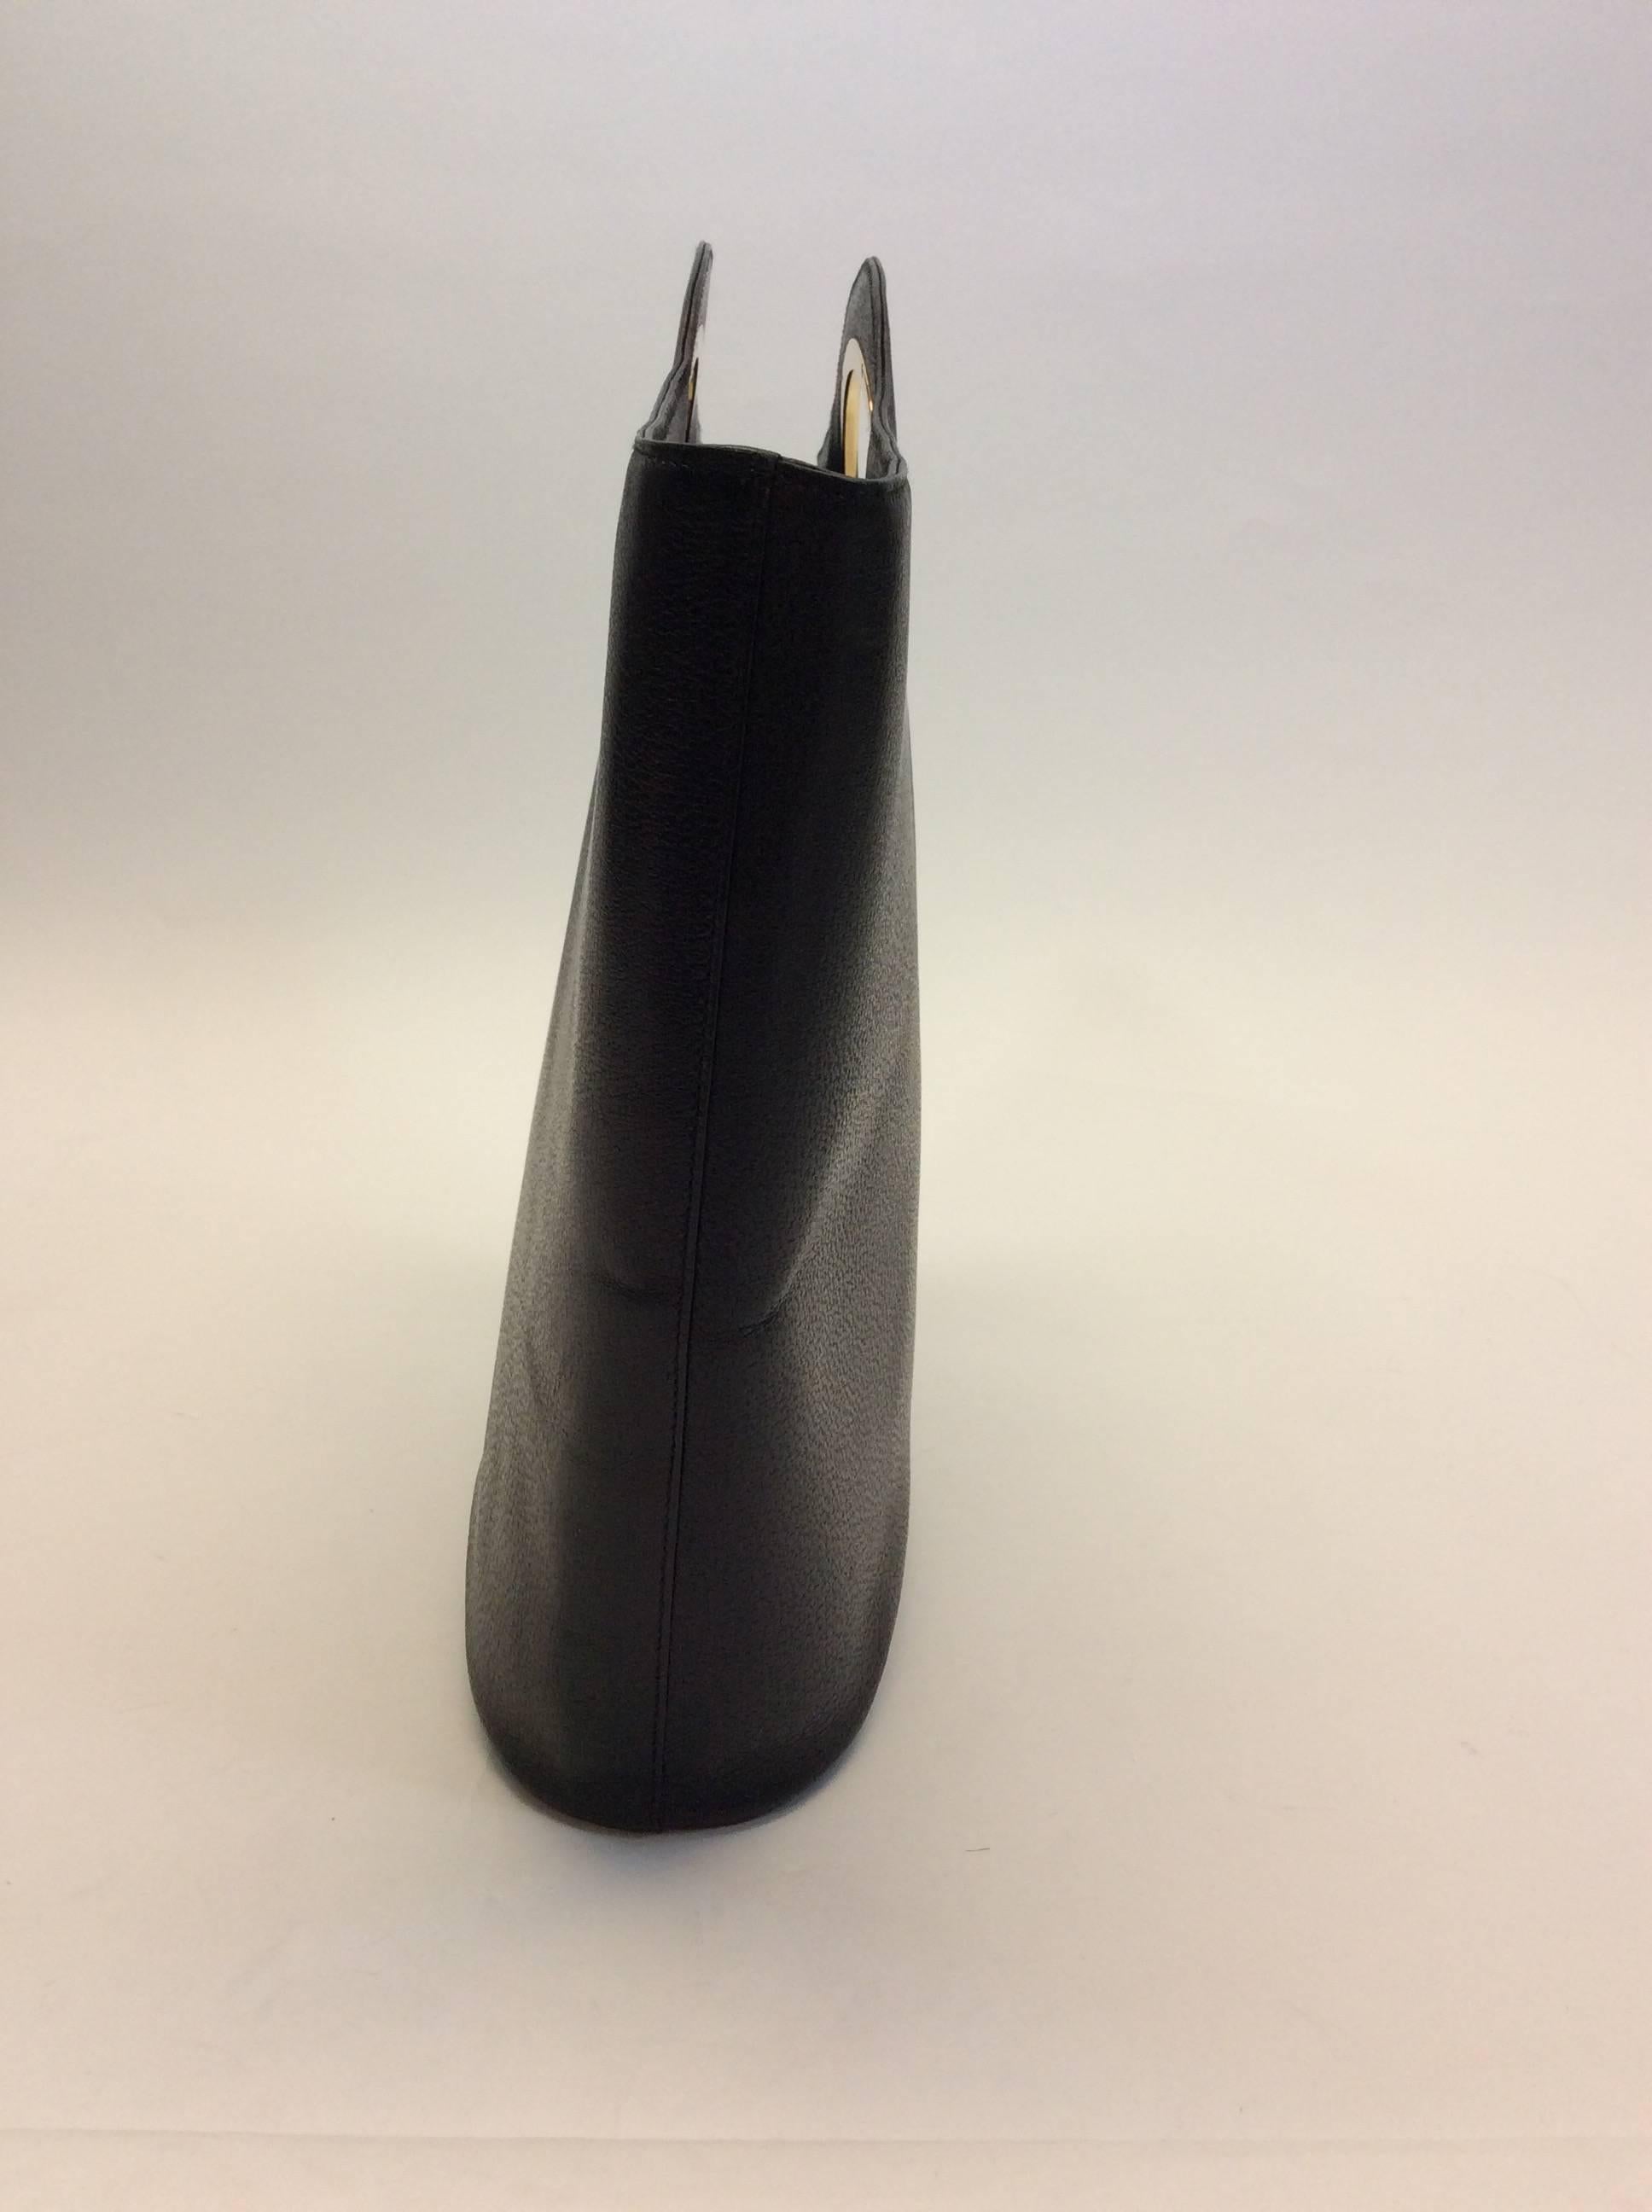 Genuine Black Leather 
Goldtone Hardware
Zipper on Inside for Closure
Pocket on Interior of Bag
